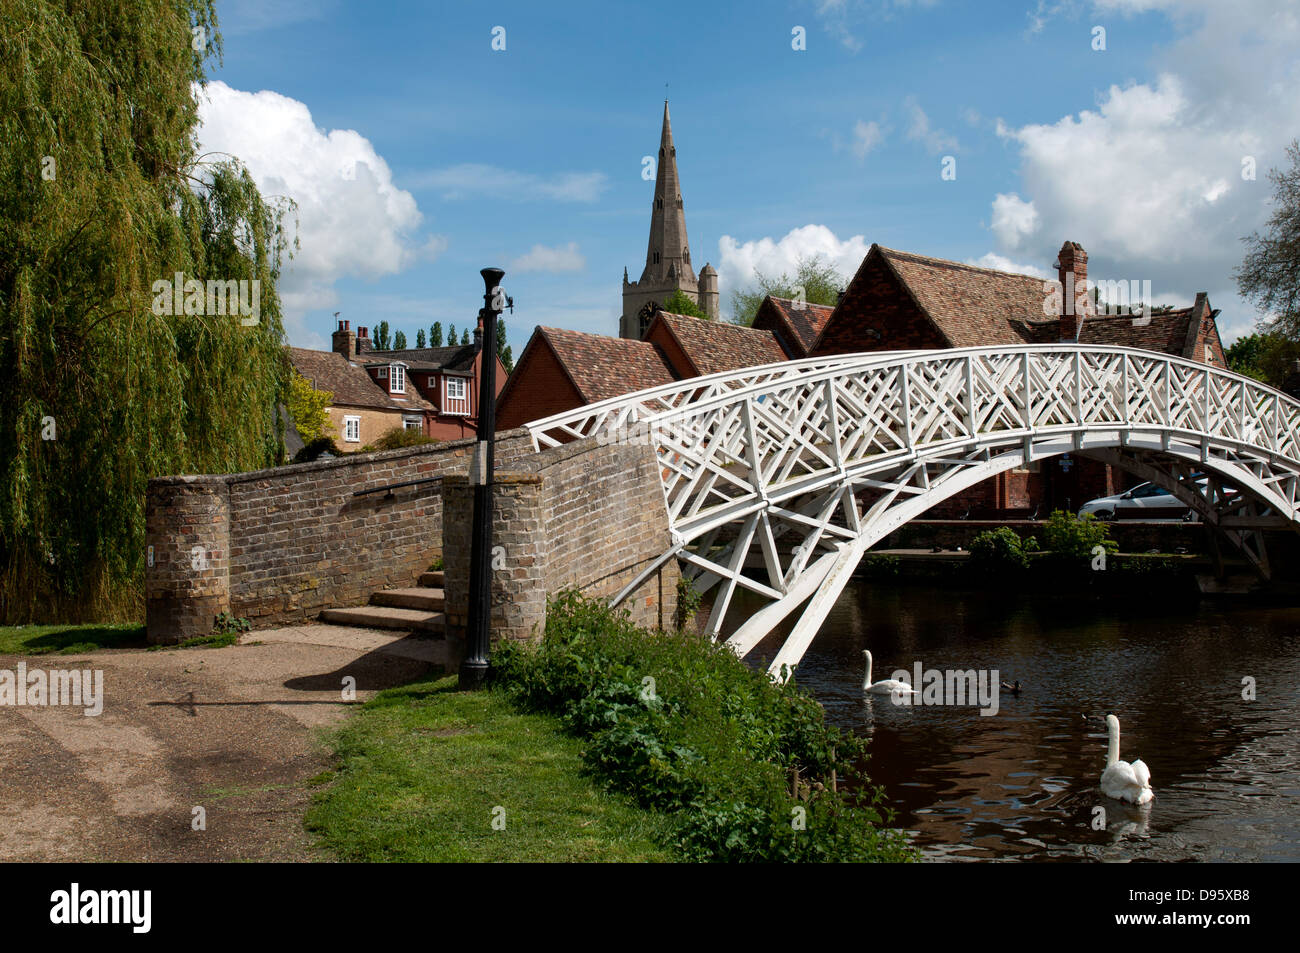 The Chinese Bridge, Godmanchester, Cambridgeshire, England, UK Stock Photo